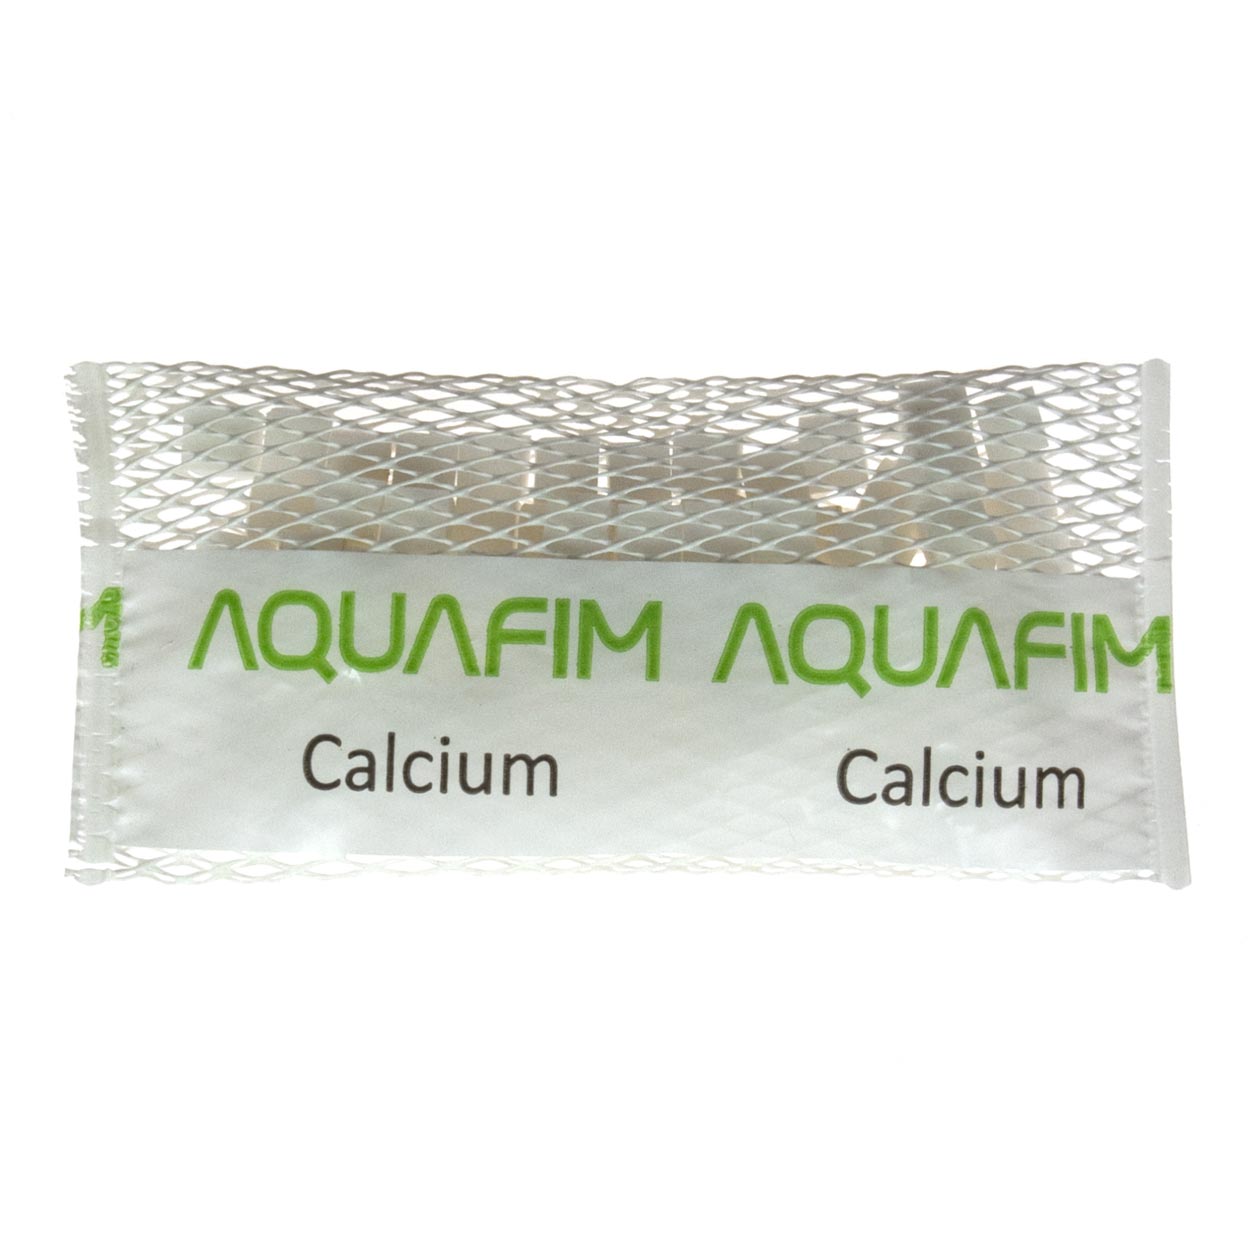 Sealutions Origin - Calcium / cubes